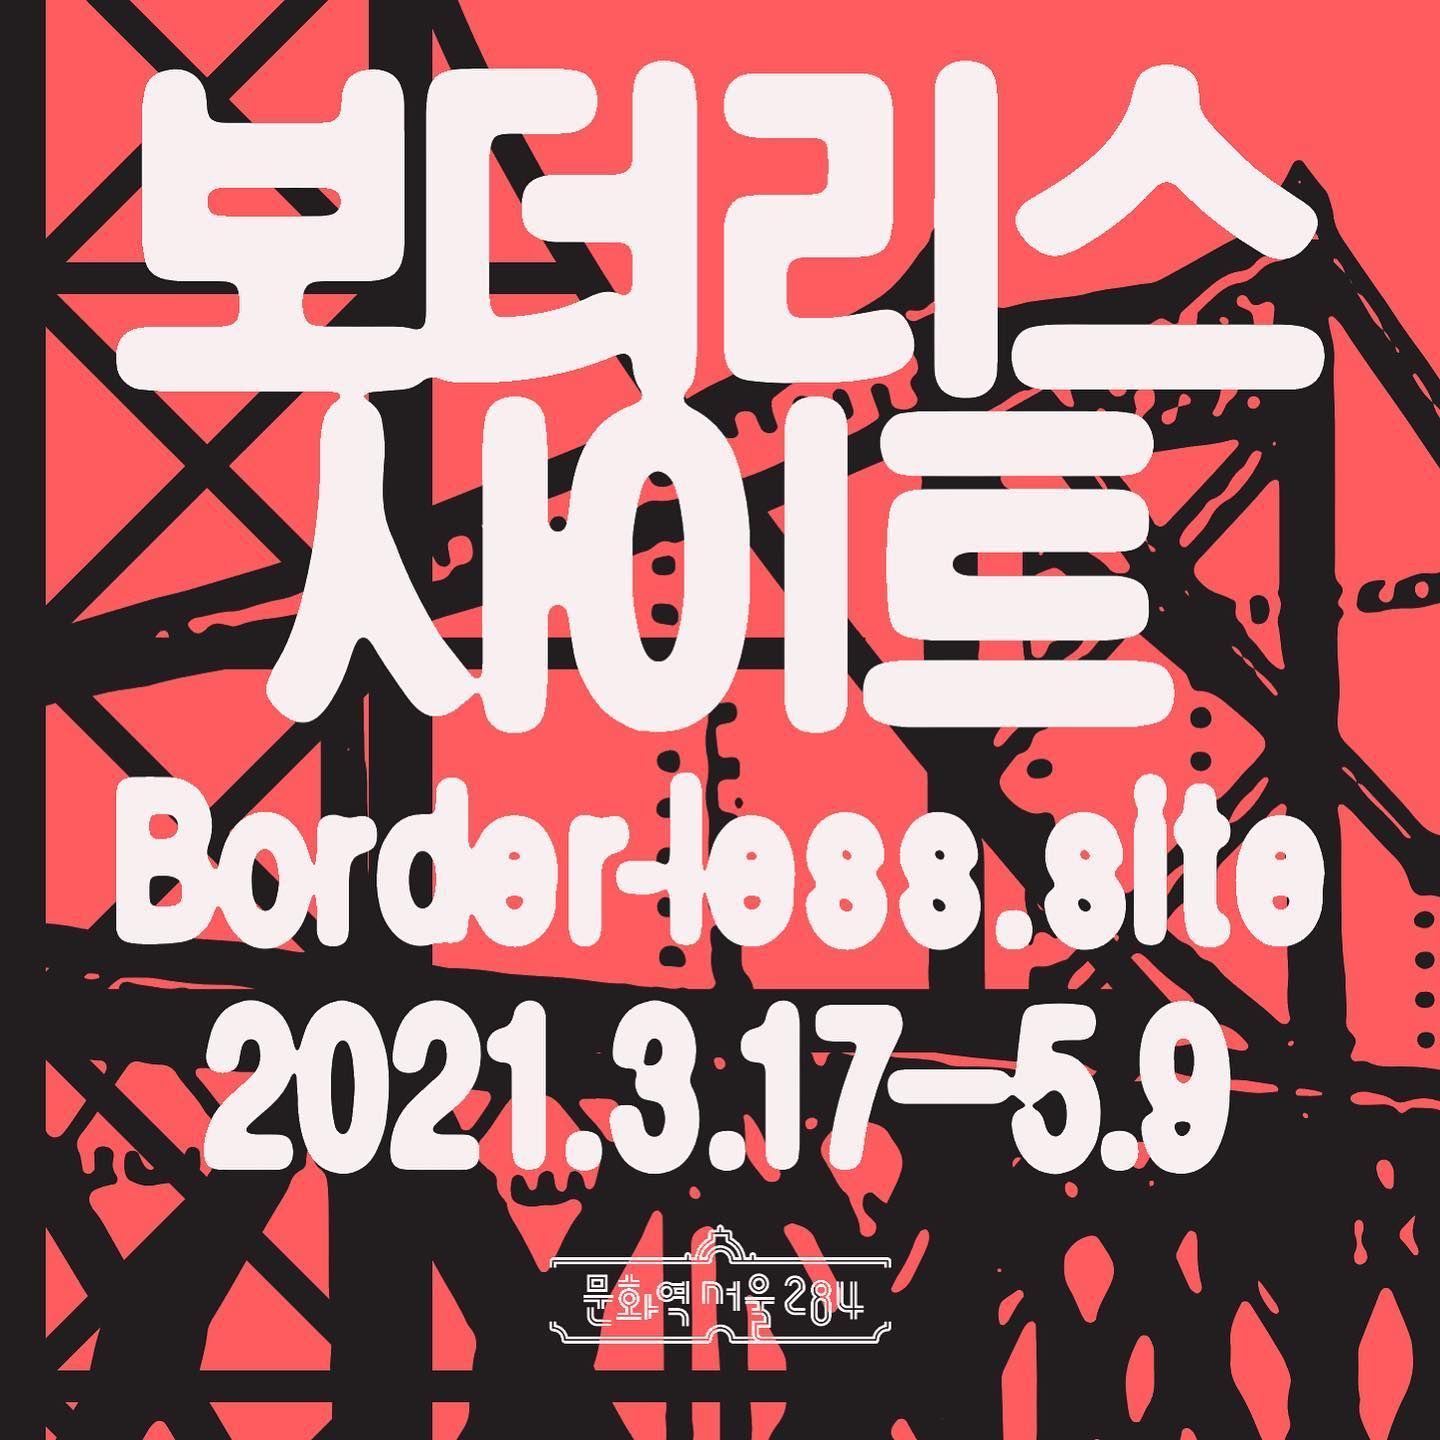 Border-less.site Exhibition @ 문화역서울 284